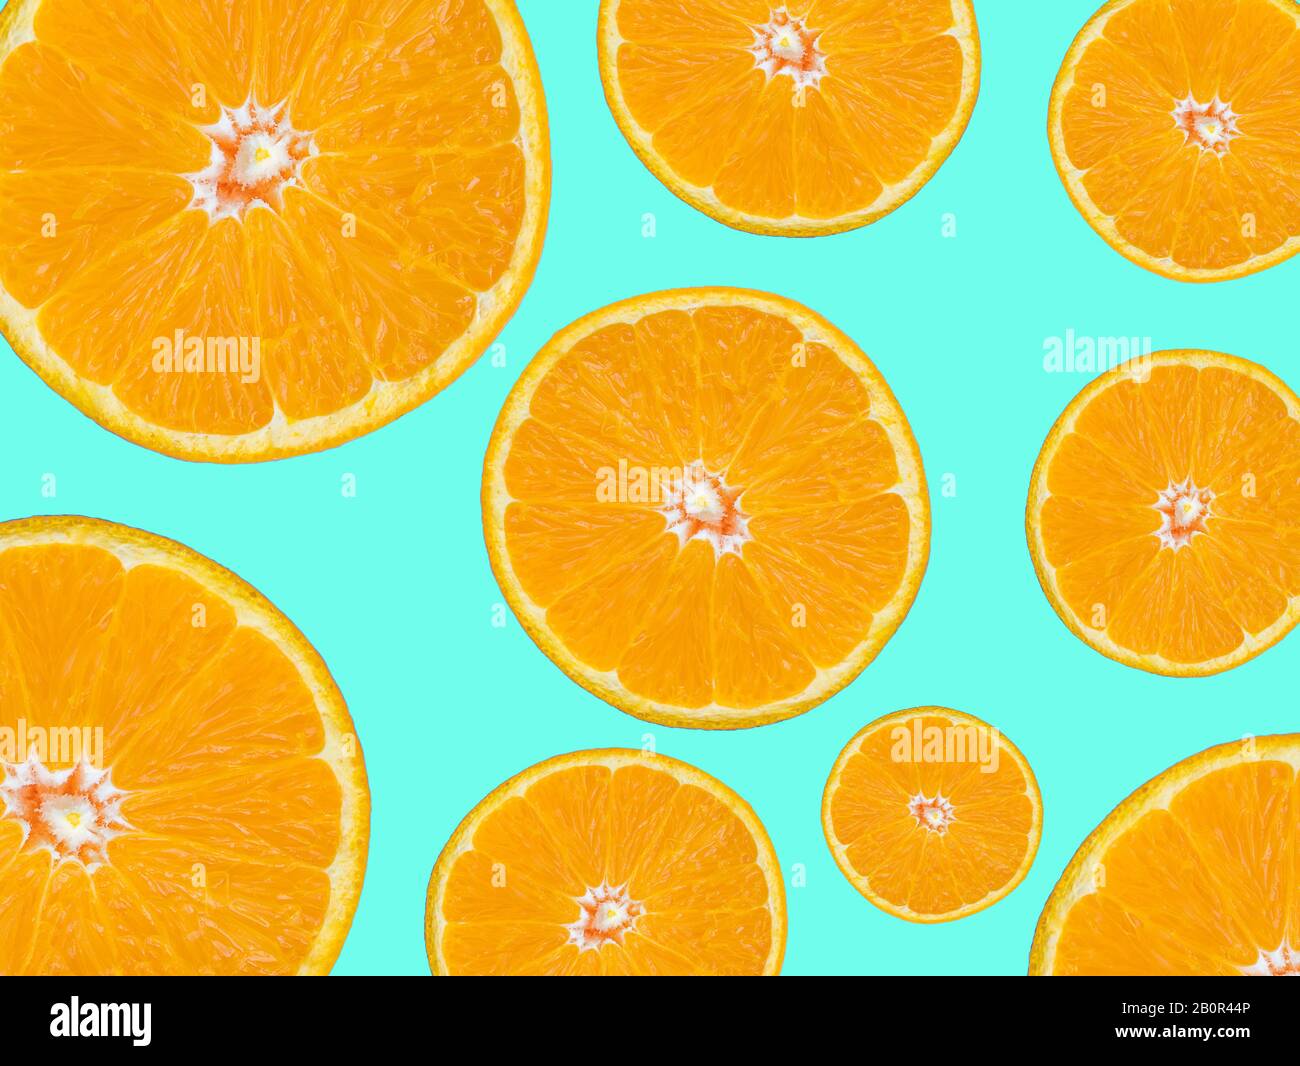 rodajas de naranja para el fondo de alimentos y bebidas. rodajas de naranja textura de superficie sobre fondo verde, estilo pop art. Foto de stock